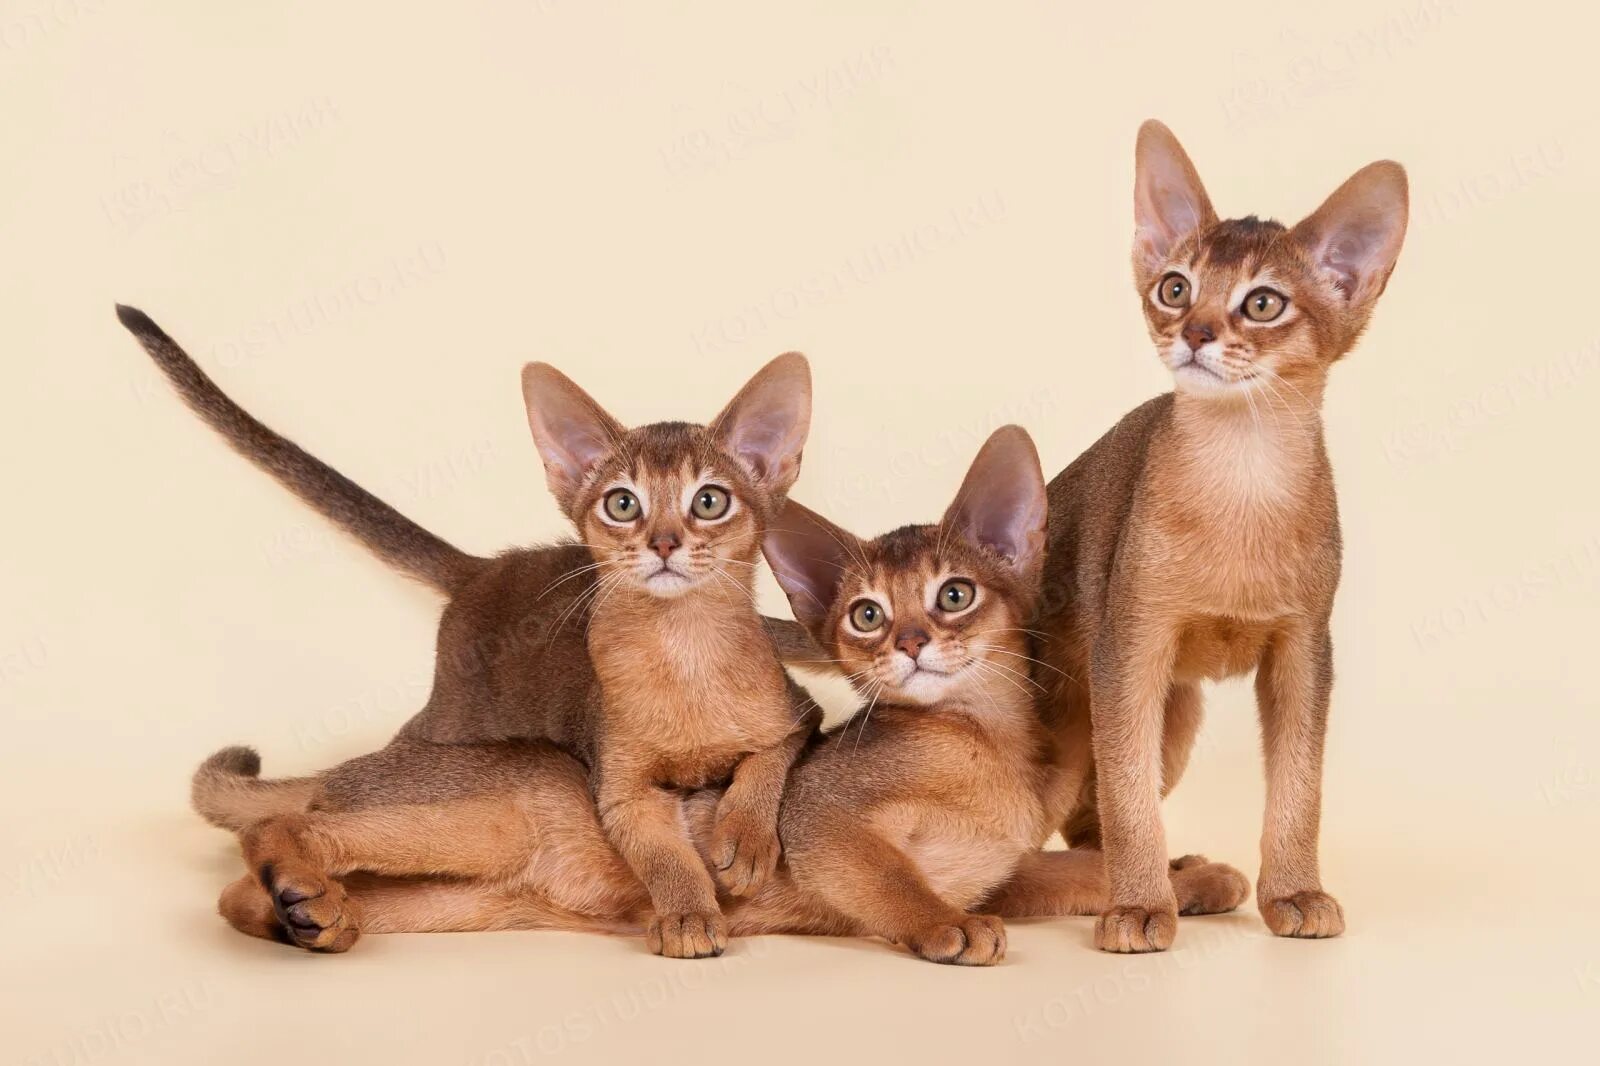 Рассмотрите фотографию кошки породы абиссинская и выполните. Абиссинская кошка. Абиссинская кошка Сорель. Абиссинские котята. Котята Абиссинской породы.